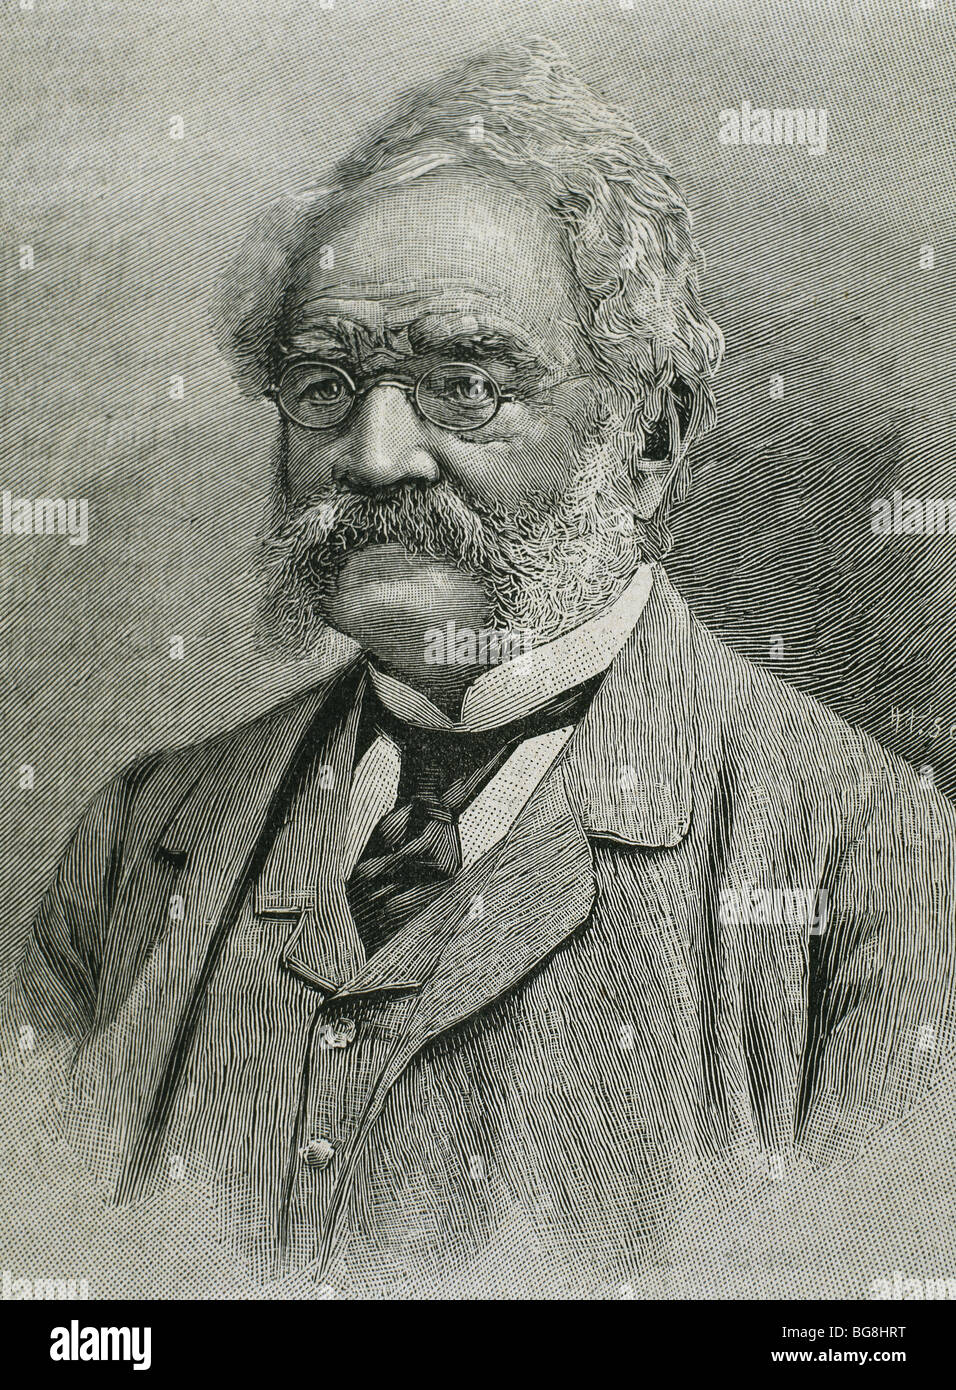 Siemens, Werner von (Lenthe, 1816-Charlottenburg, 1892). Ingeniero alemán. Grabado del siglo xix. Foto de stock